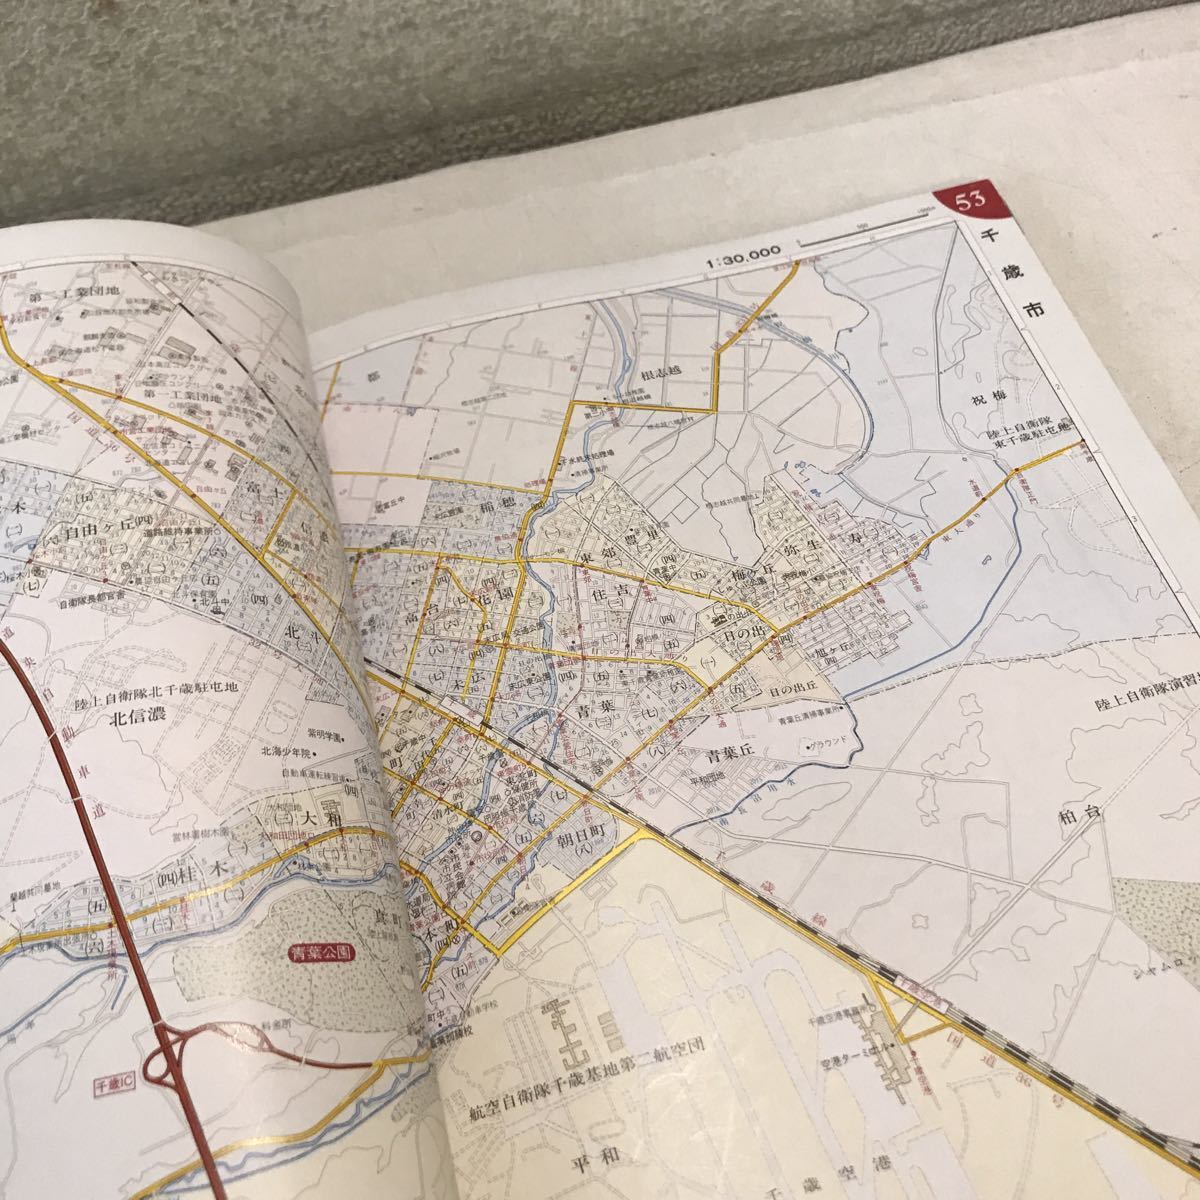 R15△ ニューエスト27 新版北海道都市地図札幌区分エアリアマップ1989 